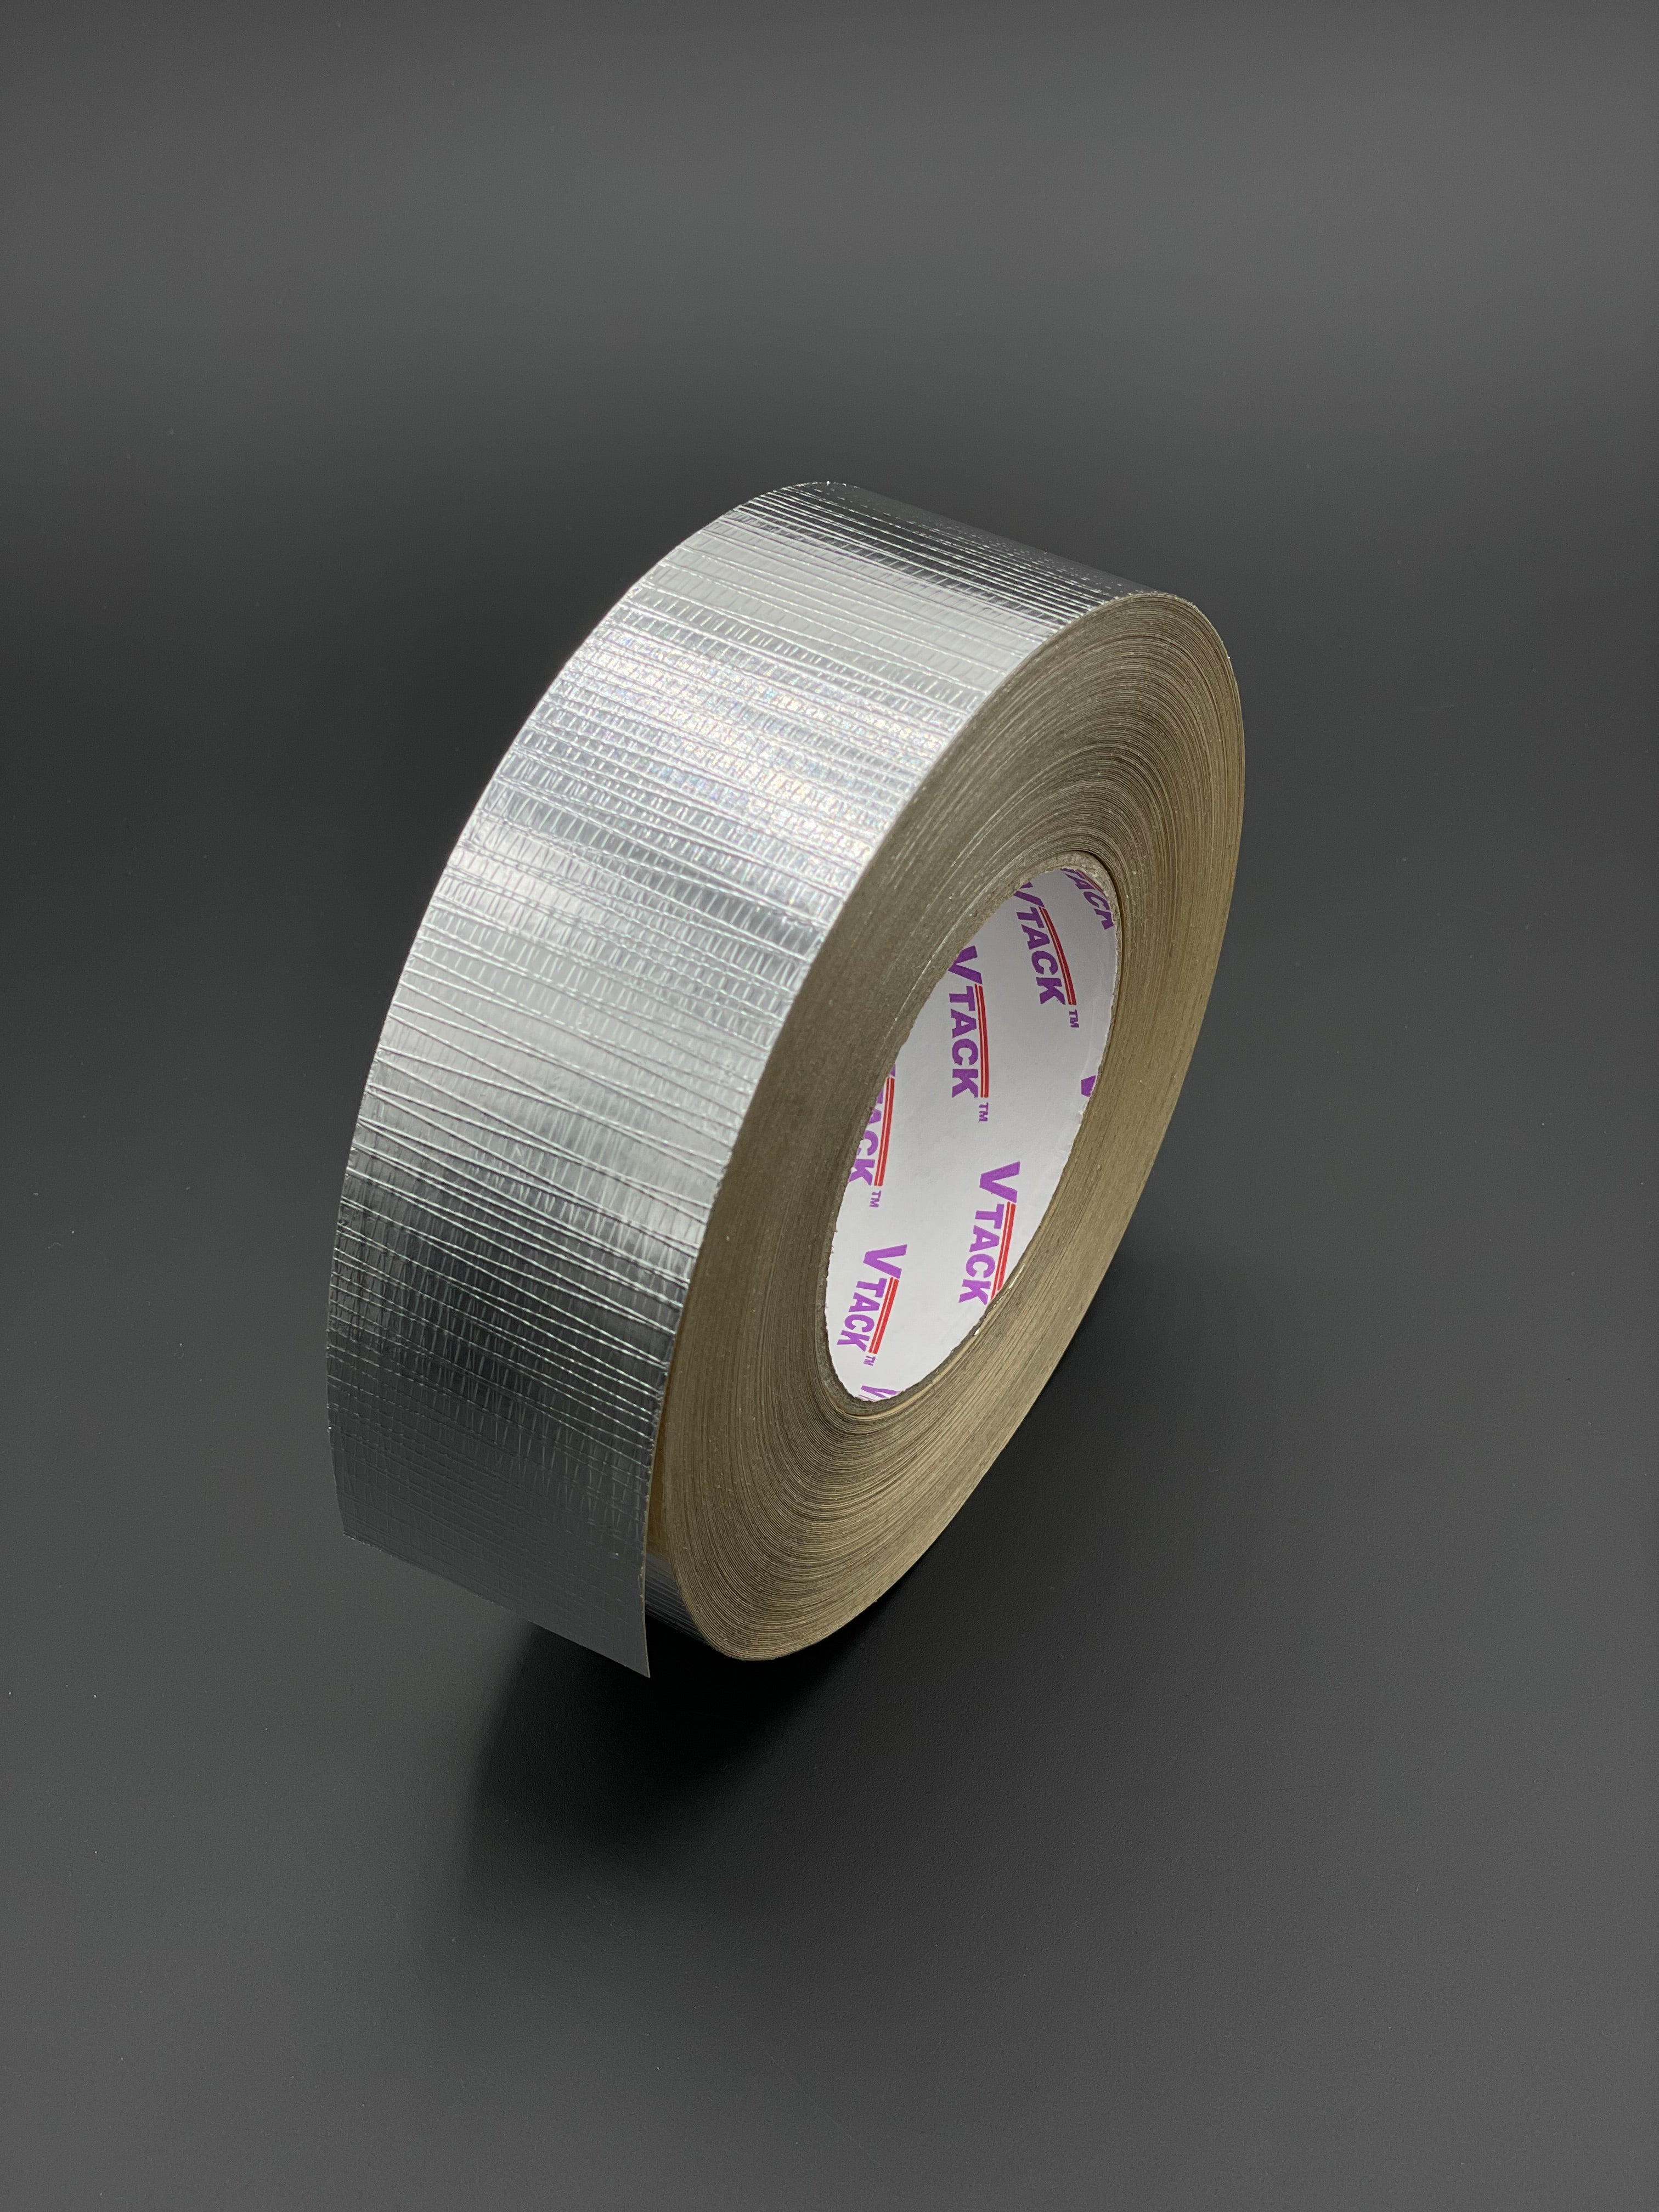 VTACK Premium Acrylic Reinforced Foil Tape